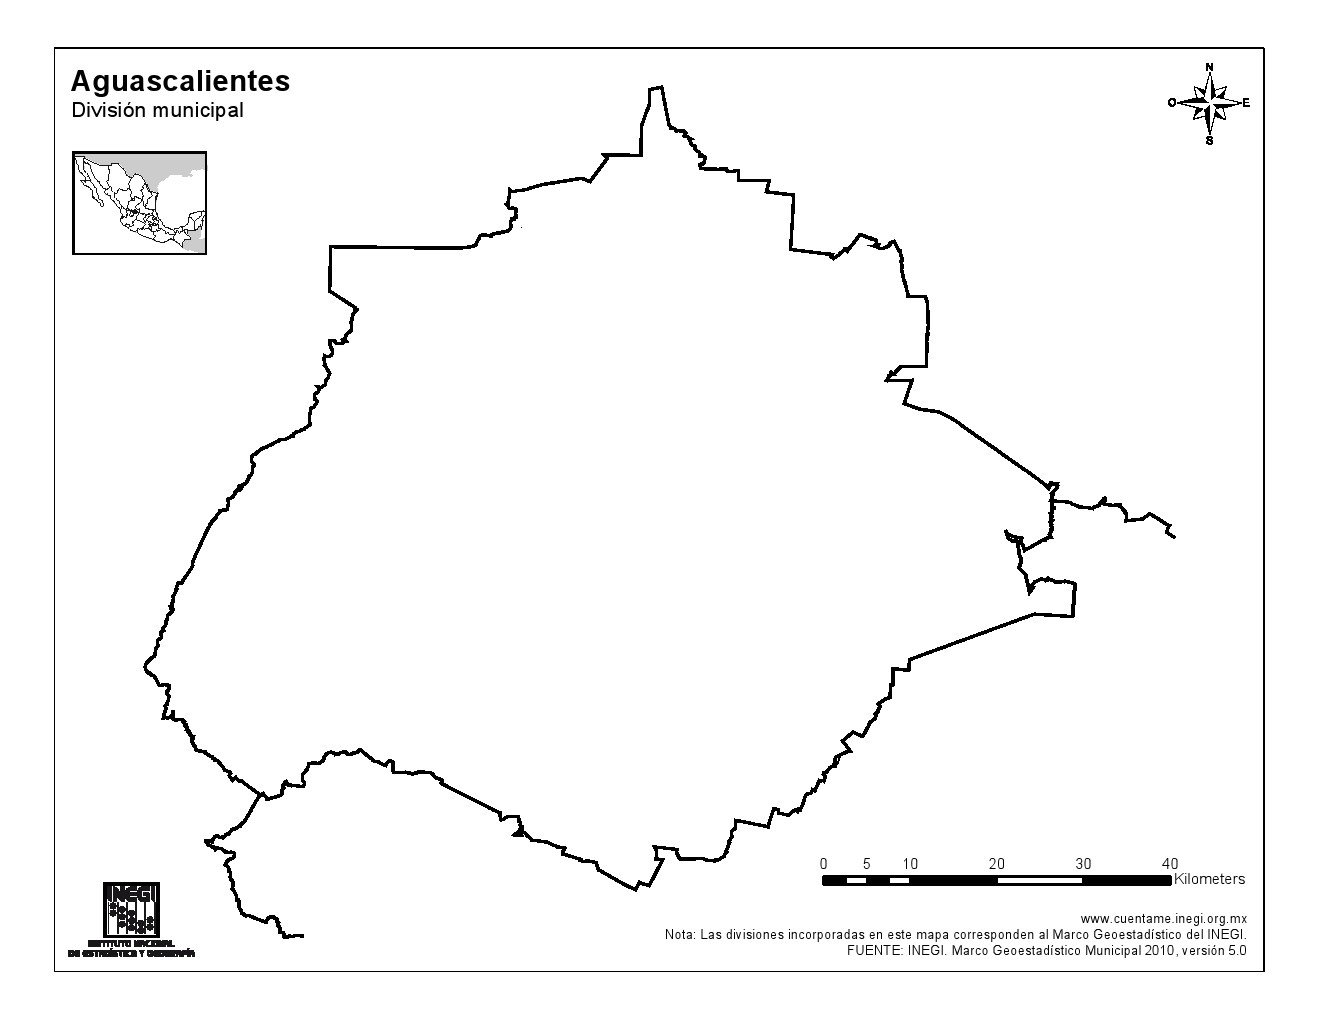 Mapa mudo de Aguascalientes. INEGI de México